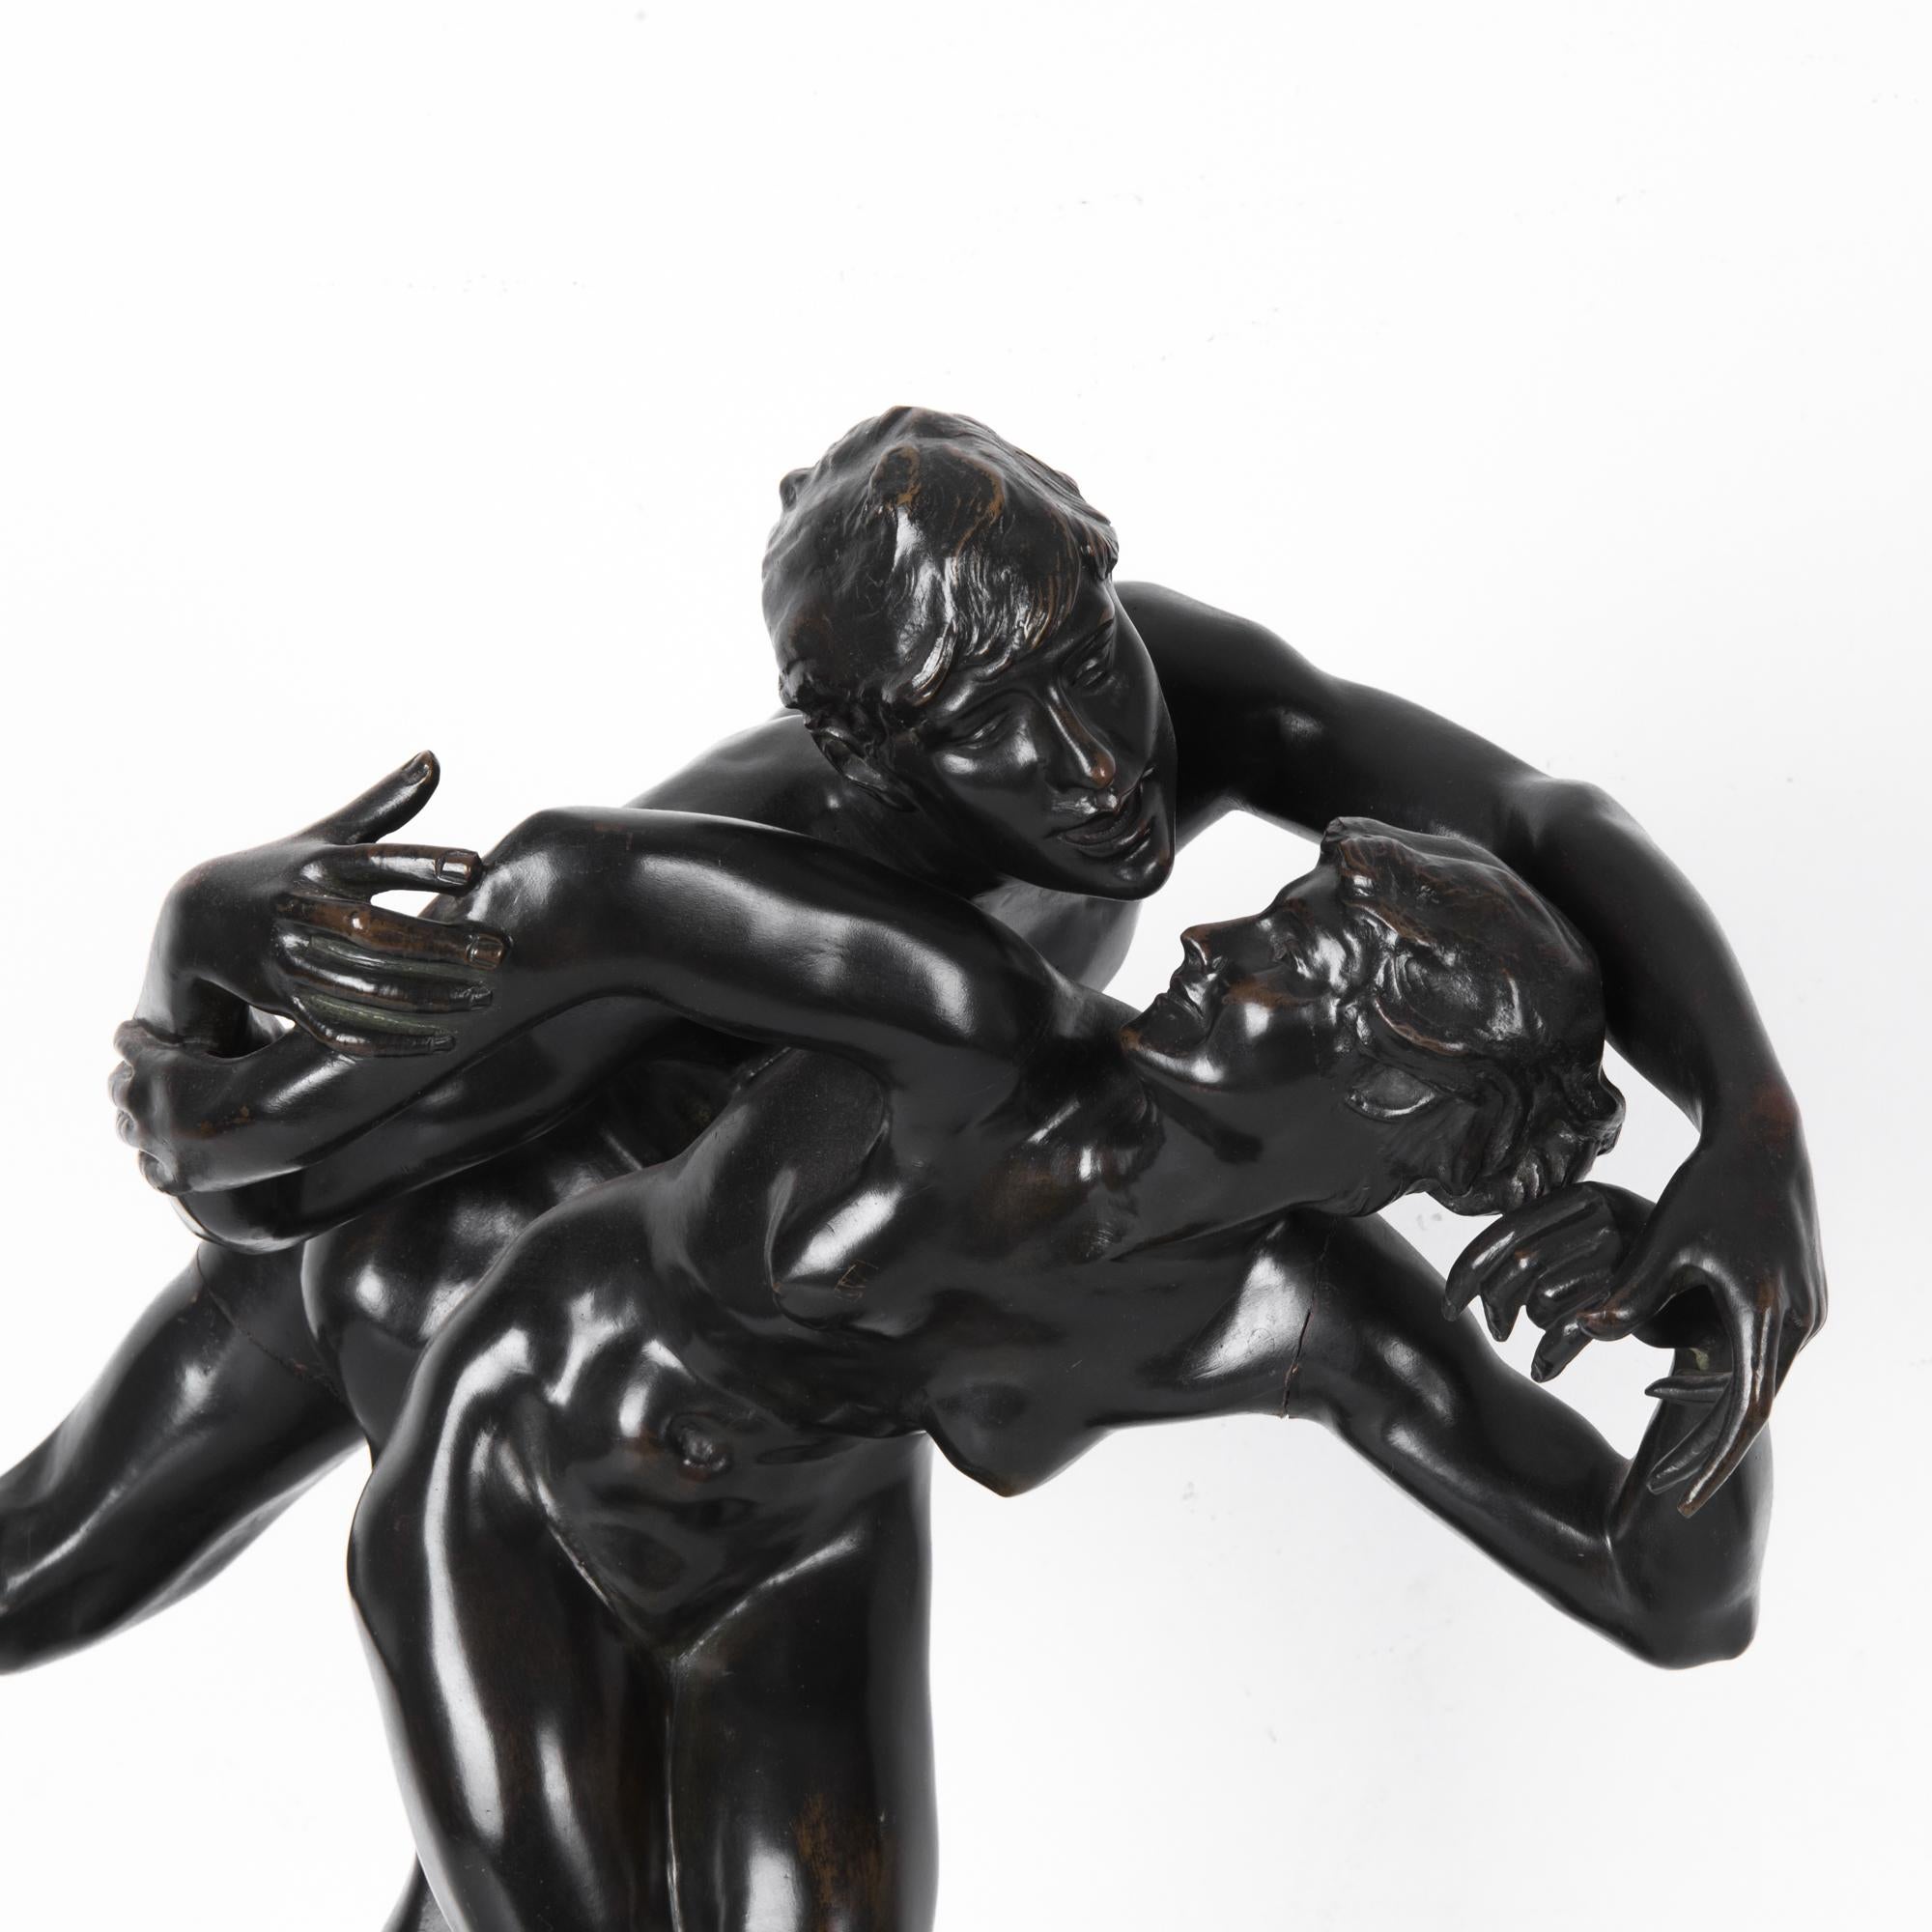 Eine figurative Bronzeskulptur von J. Lambeux aus der Jahrhundertwende, Belgien. Ein Mann und eine Frau wirbeln in einer dynamischen, beweglichen Geste. Die reiche und eindrucksvolle Oberfläche ist so dunkel, dass sie fast schwarz ist. Die